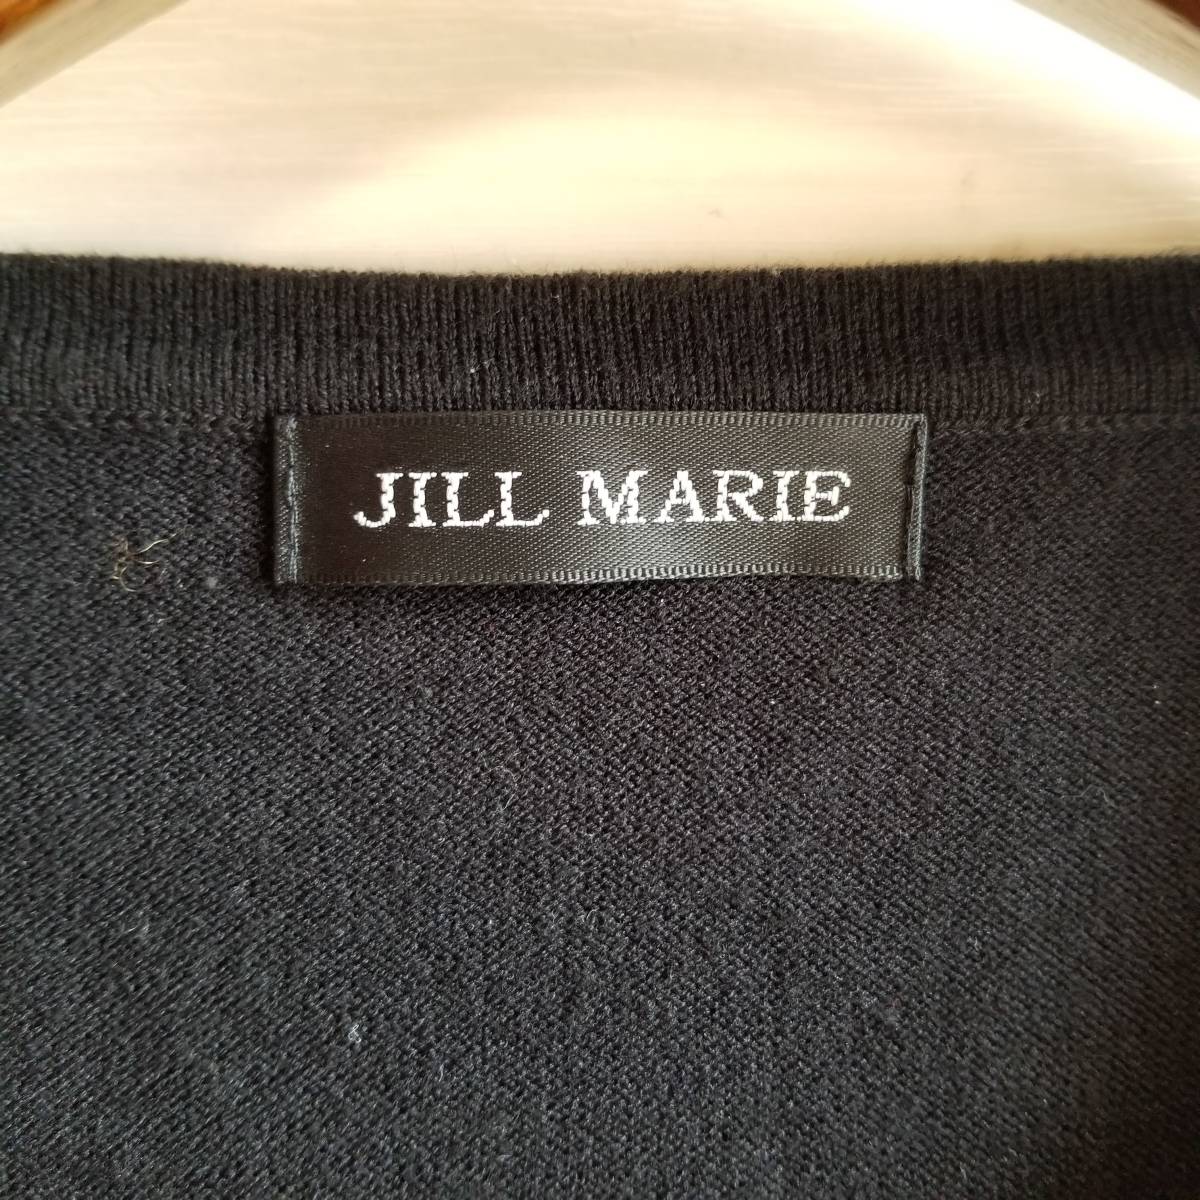 JILL MARIE トップス シアーシャツ ブラウス ラウンドネック スパンコール 長袖 レディース サイズ 黒 Au229_画像6